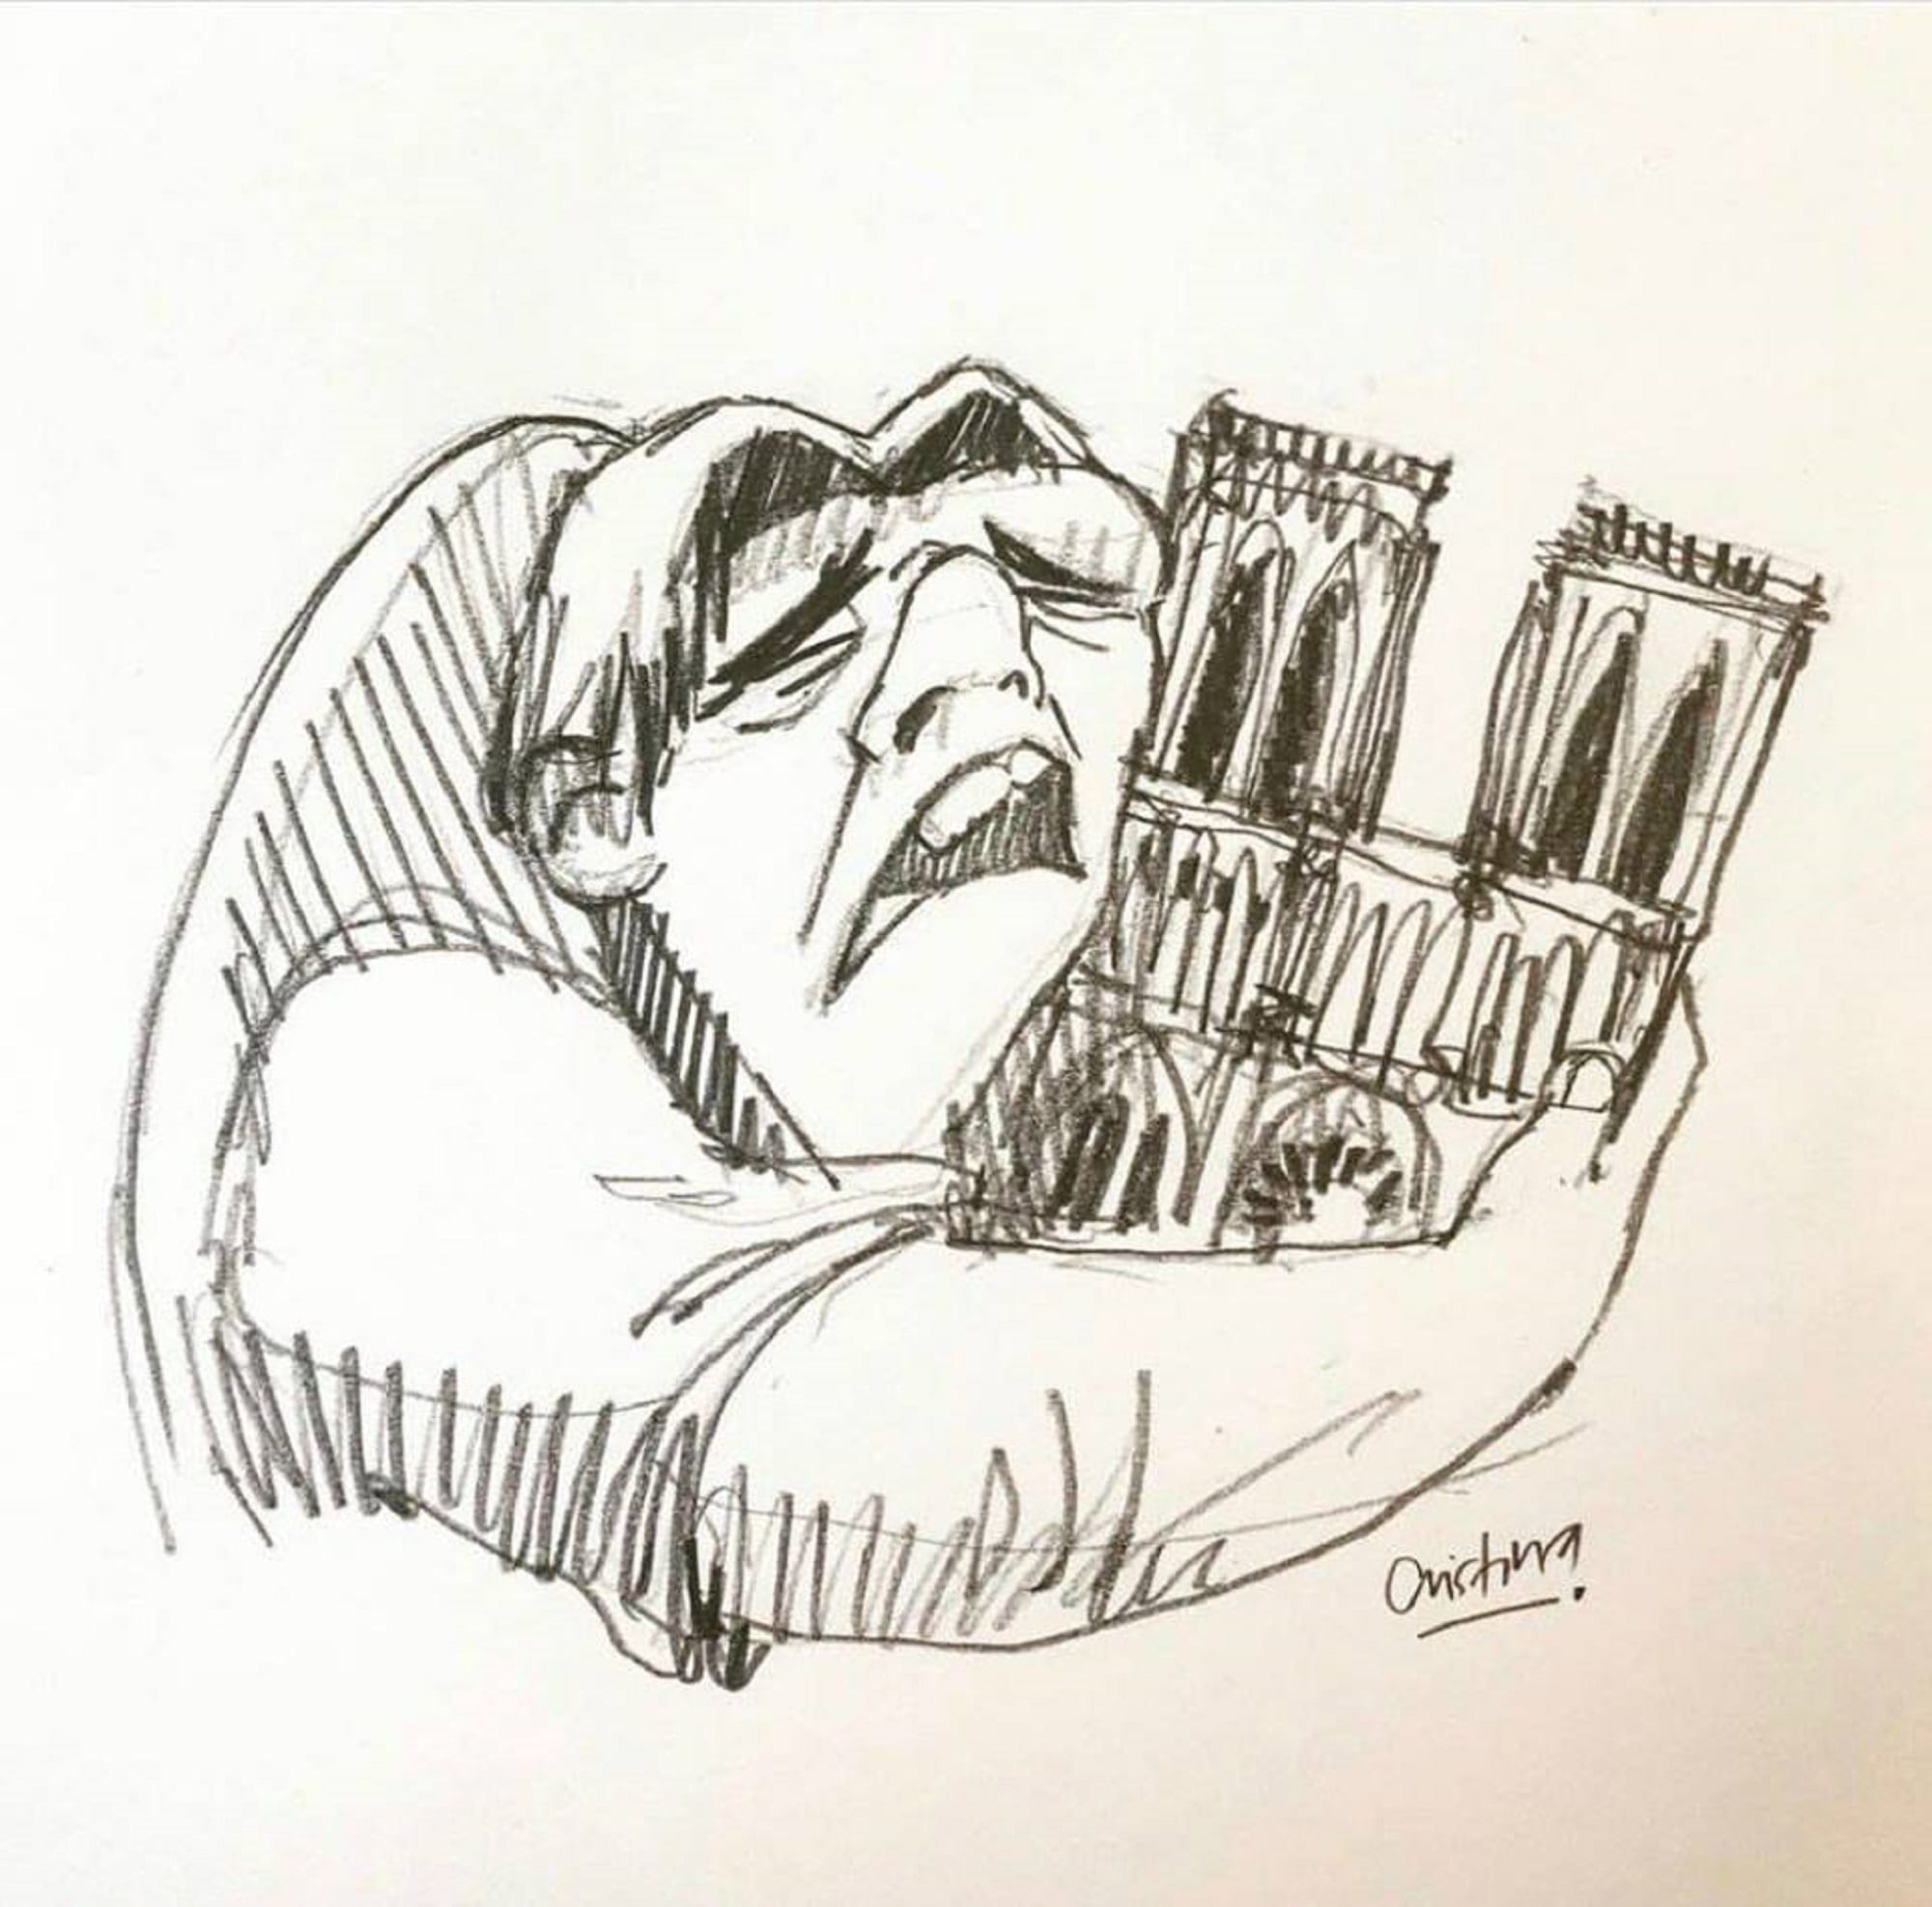 Dalla solidarietà del Teatro La Fenice alla gaffe di Trump. Notre-Dame, tutte le reazioni. L’Italia offre in aiuto i suoi tecnici del Mibac